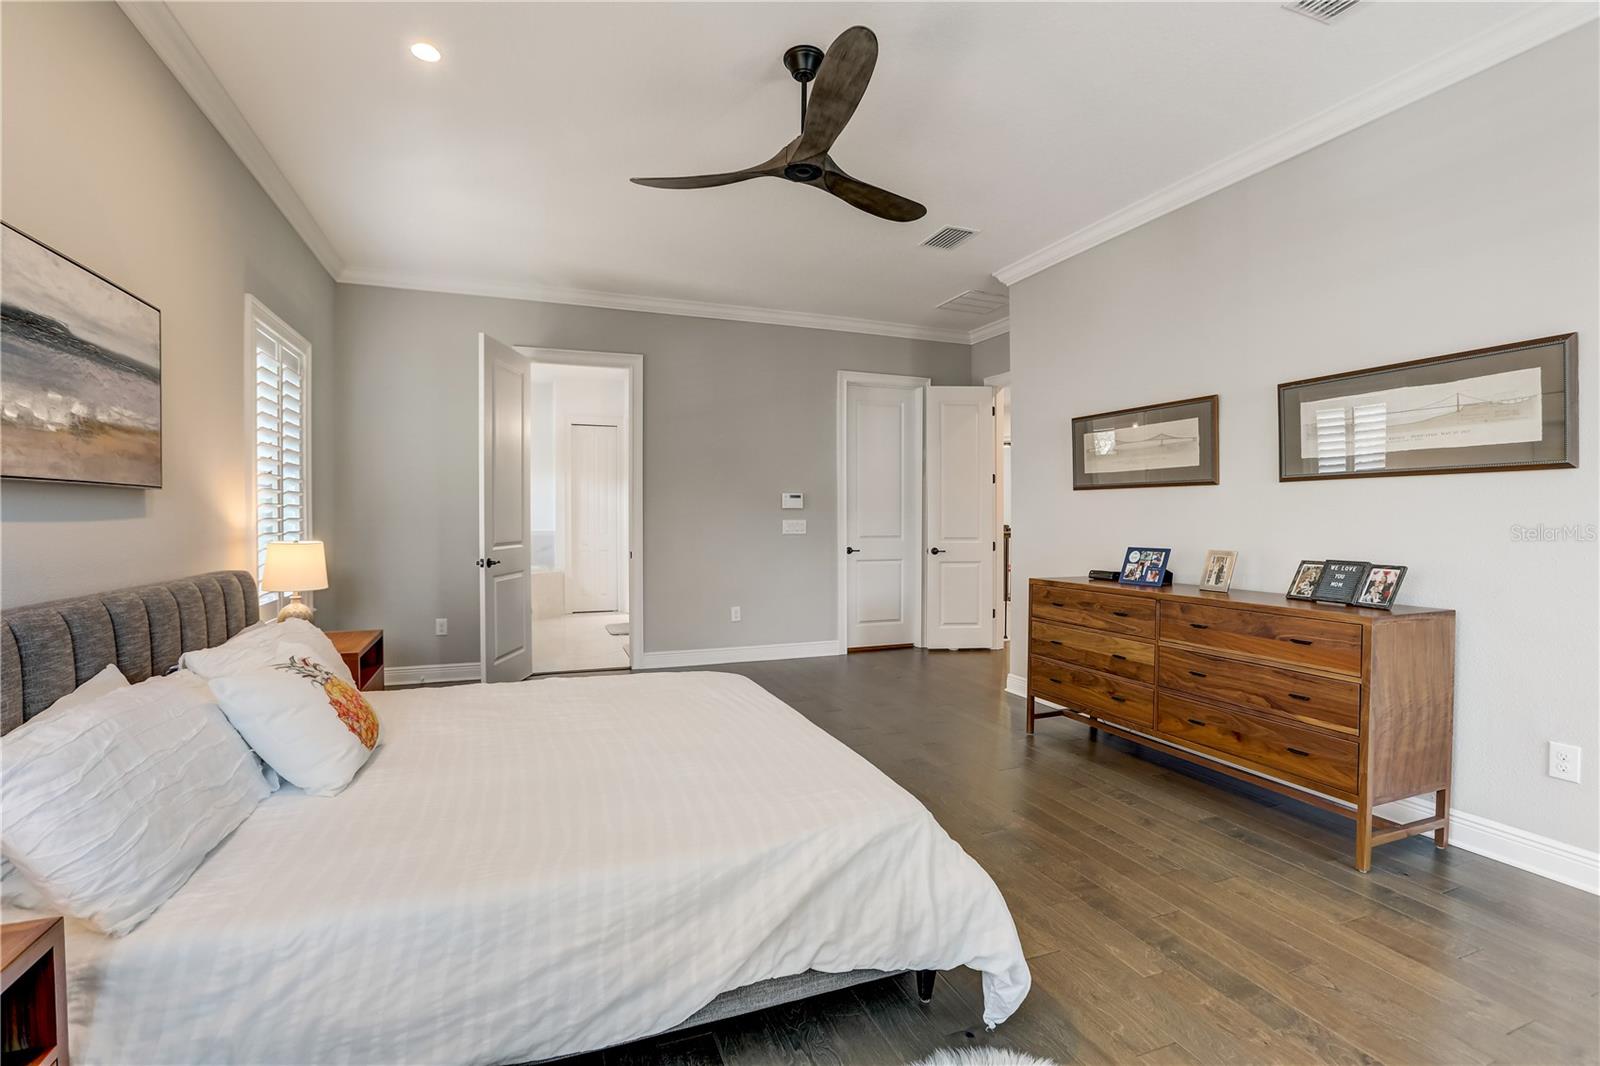 Owners suite bedroom, 2 walk-in closets, engineered hardwood floors, recessed lighting & ceiling fan